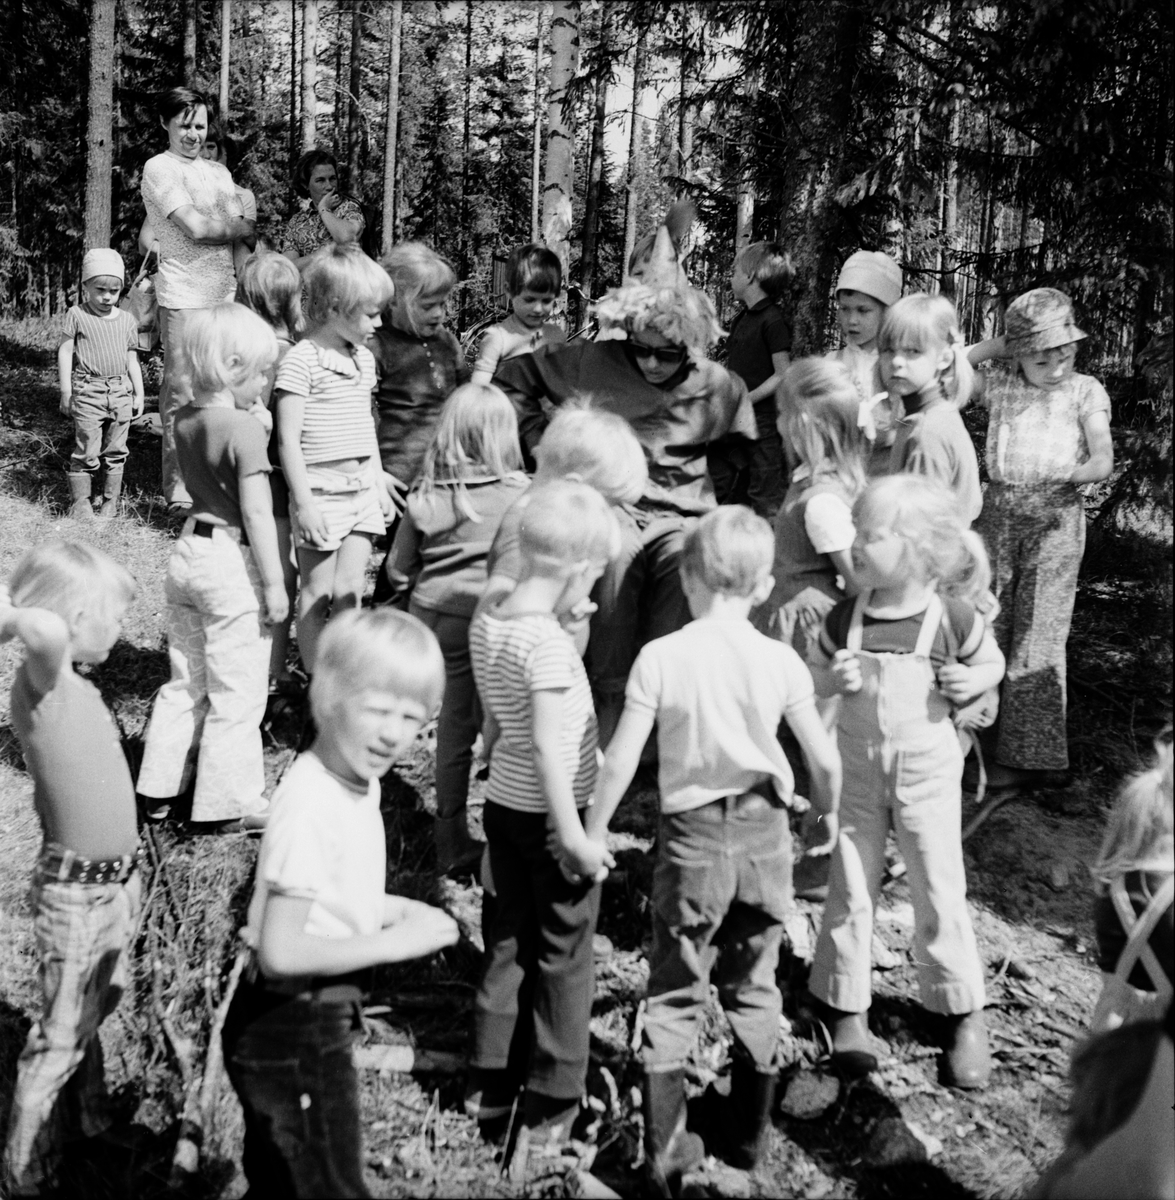 Skogsmulle-skolan i Arbrå avslutas, juni 1972.
Bland barnen på bilden syns Mattias Edman, Anneli Jönsson, Roger Eriksson, Ingela Jönsson och Bodil Edman. Mannen längst upp till vänster är Malte Edman.